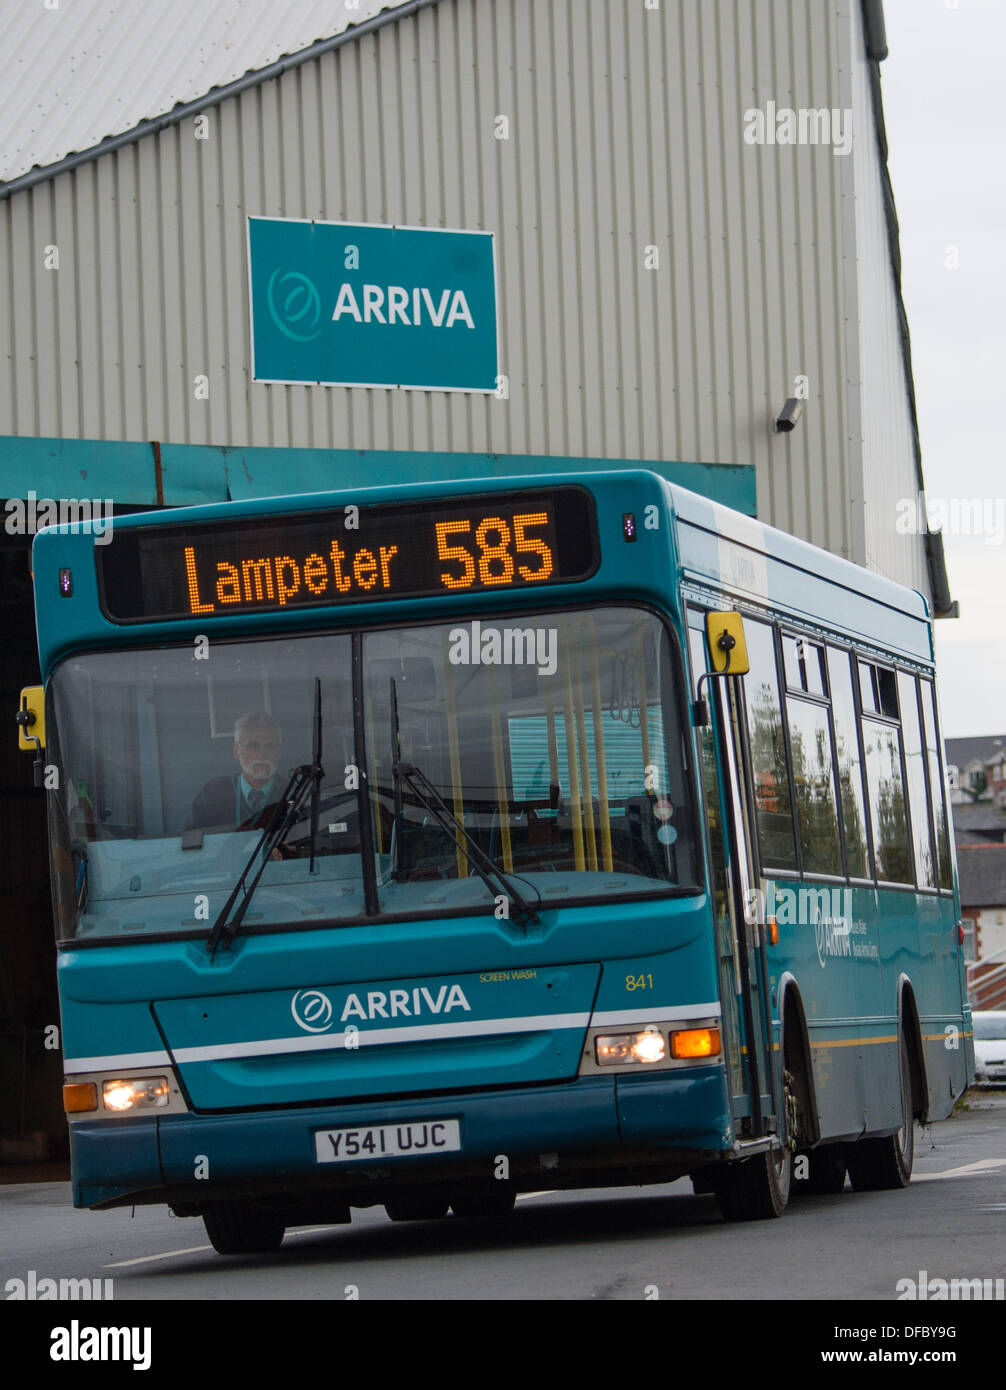 Aberystwyth Wales UK, sagte 2. Oktober 2013 In einer überraschenden Ankündigung Arriva Busse Wales, dass es aus 6 Routen in und um Aberystwyth, führt die Schließung der lokale Bus-Depot und Werkstätten in den umliegenden Ortschaften vom 21. Dezember dieses Jahres zieht. Die axing der Dienste führt zu Verlust von 46 Arbeitsplätzen. Arriva Busse Wales Schuld ÖPNV-Kosten für Treibstoff und Finanzierung. "Den letzten Netzwerkprüfung geführt hat uns zu der Annahme, dass aktuelle Dienstleistungen in diesem Bereich nicht, trotz unserer besten Bemühungen weiter," sagte das Unternehmen in einer Erklärung. Bildnachweis: Keith Morris/Alamy Live-Nachrichten Stockfoto